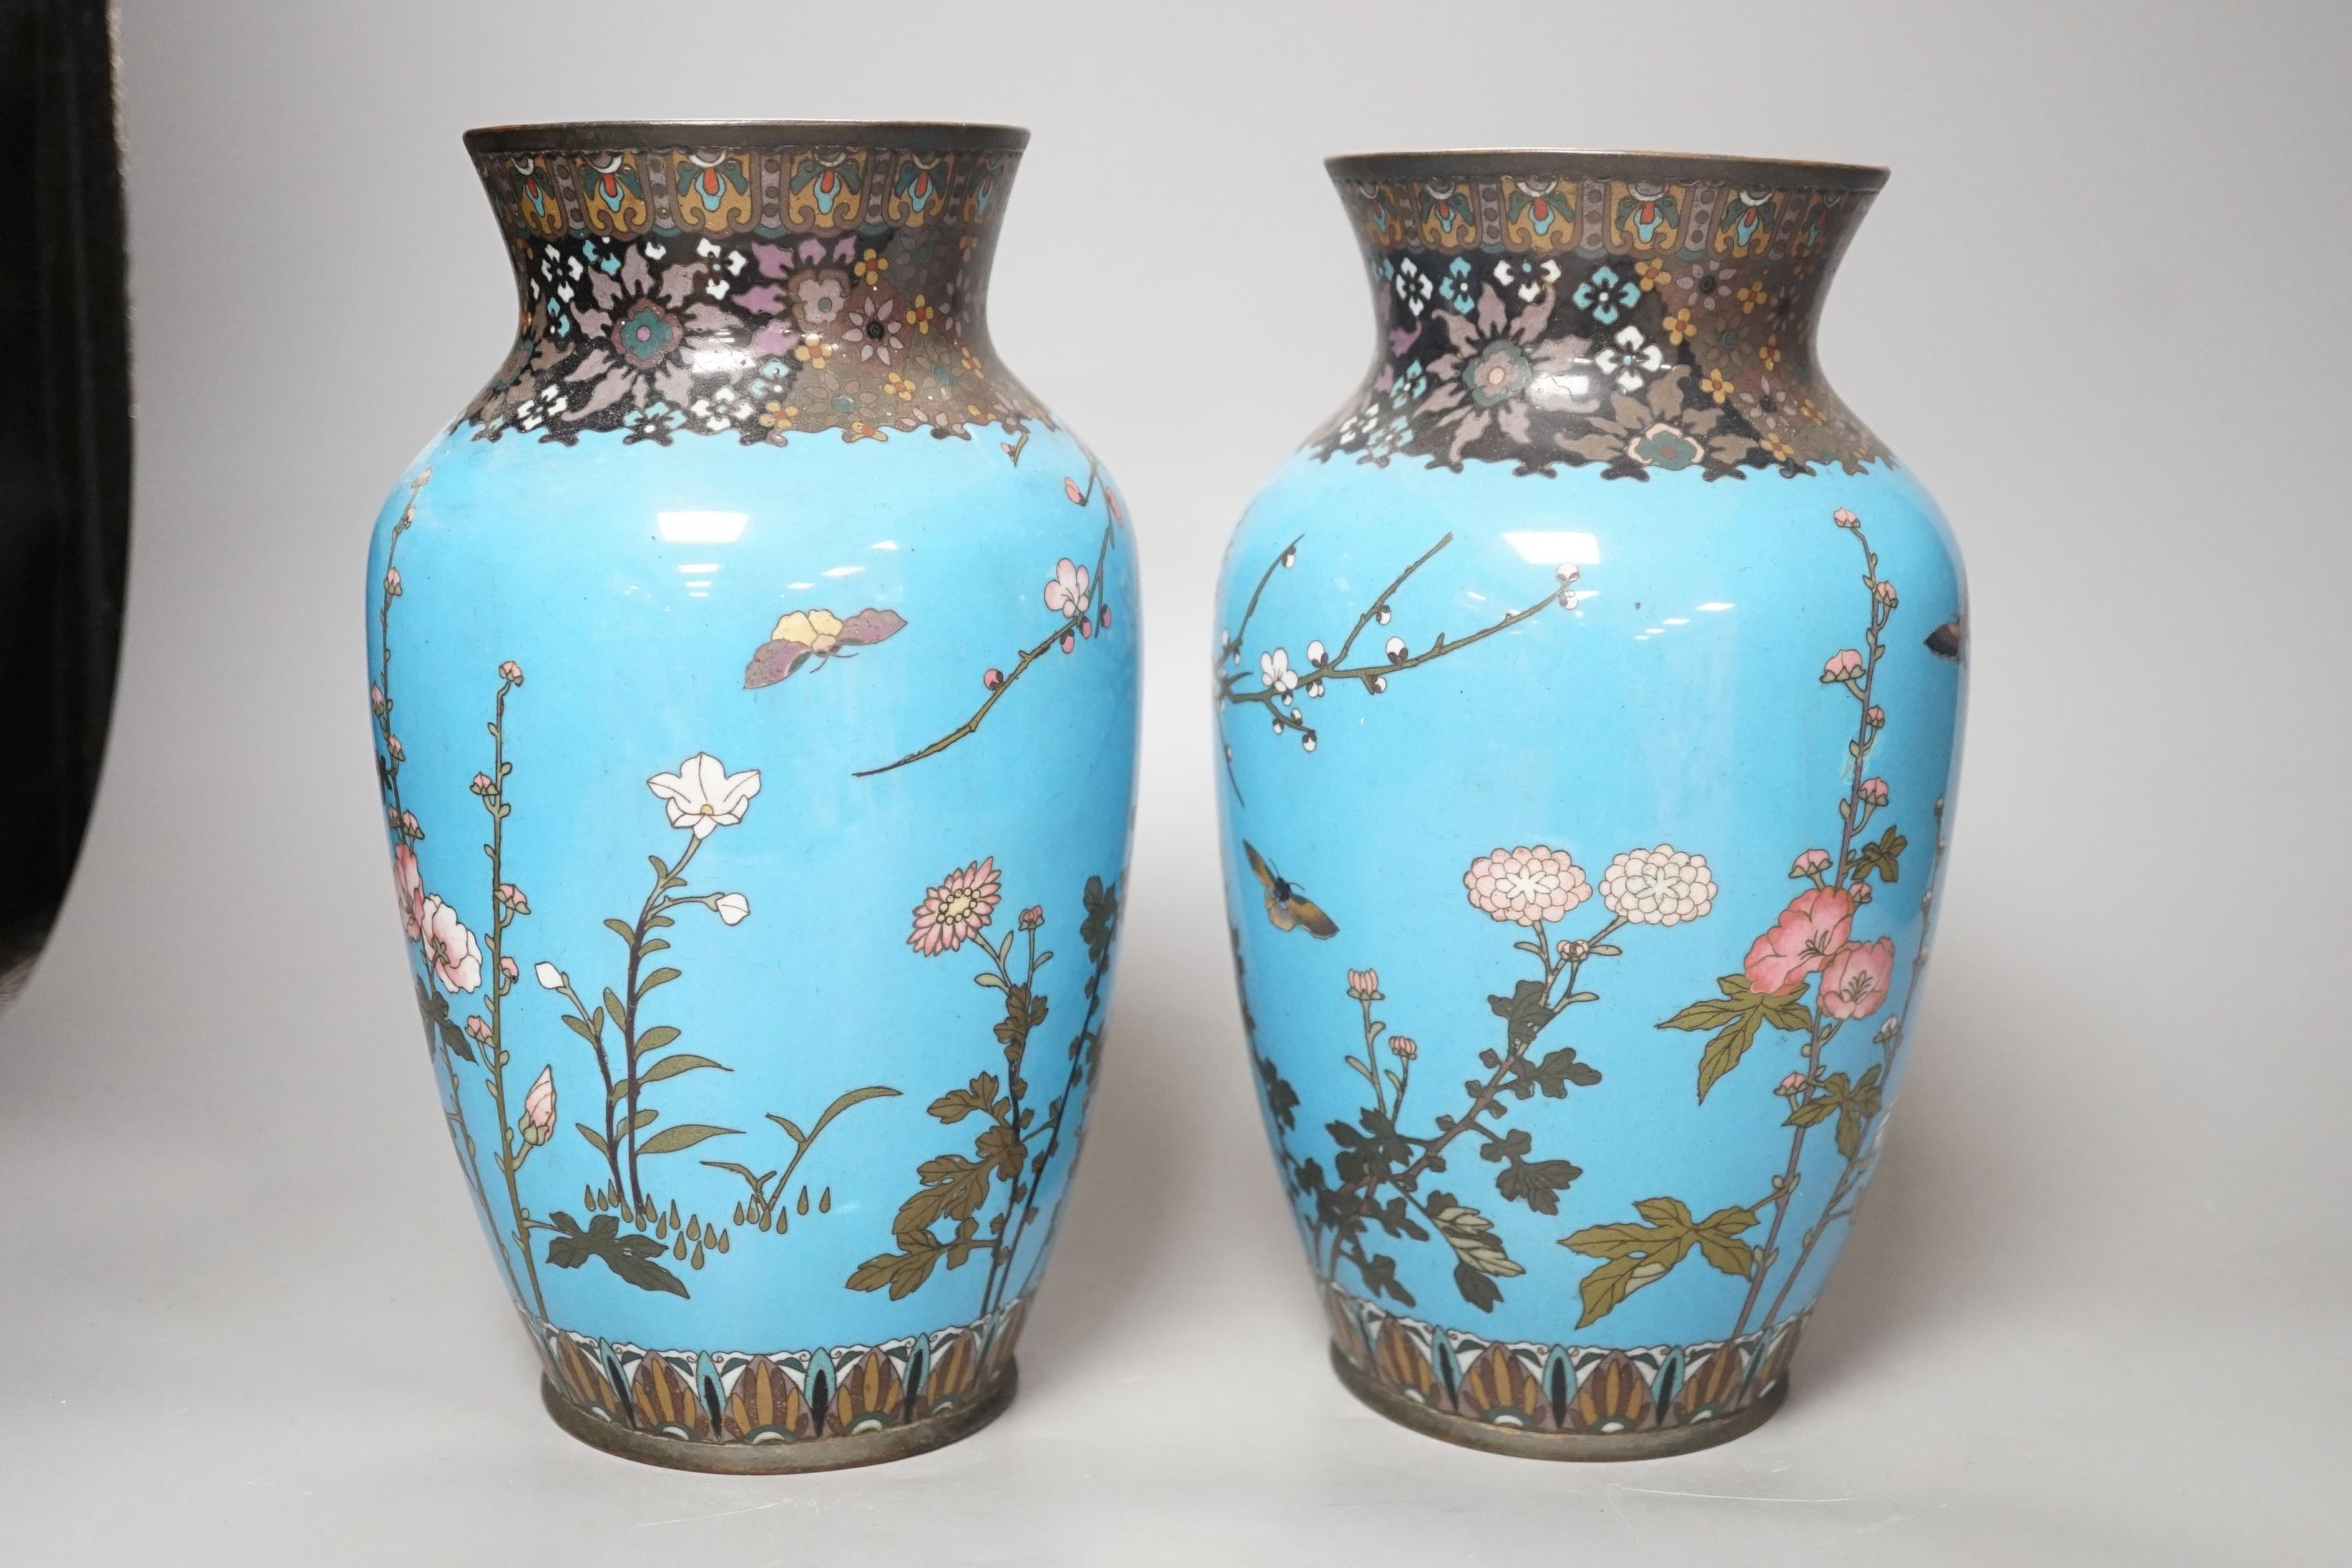 A pair of Japanese blue cloisonné enamel floral vases - 25cm tall